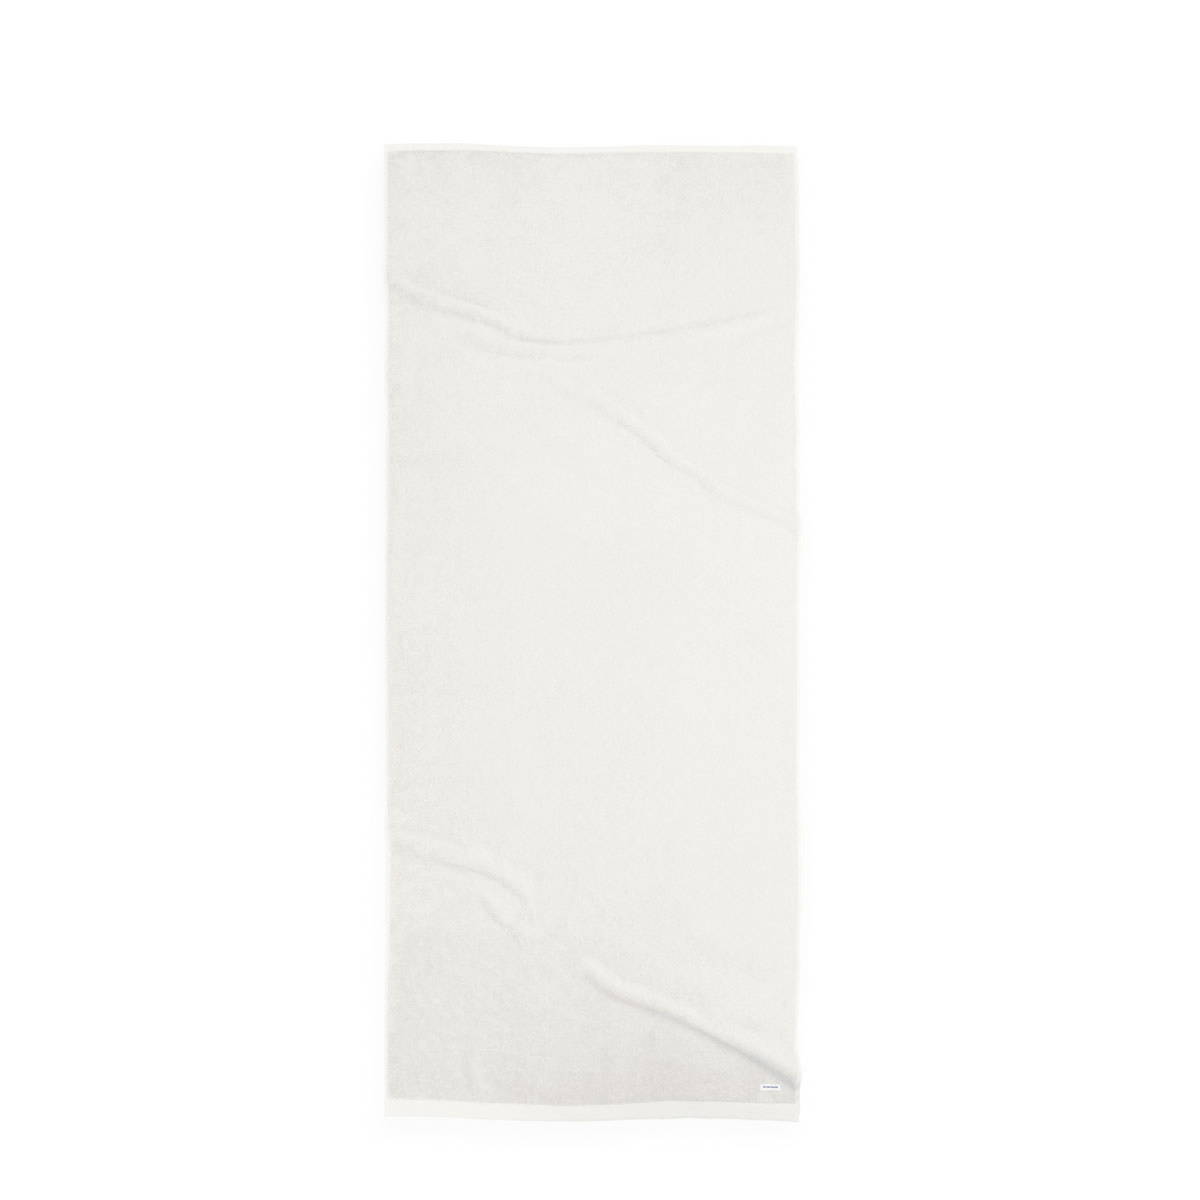 Tom Tailor Crisp White szauna törölköző, 80 x 200 cm